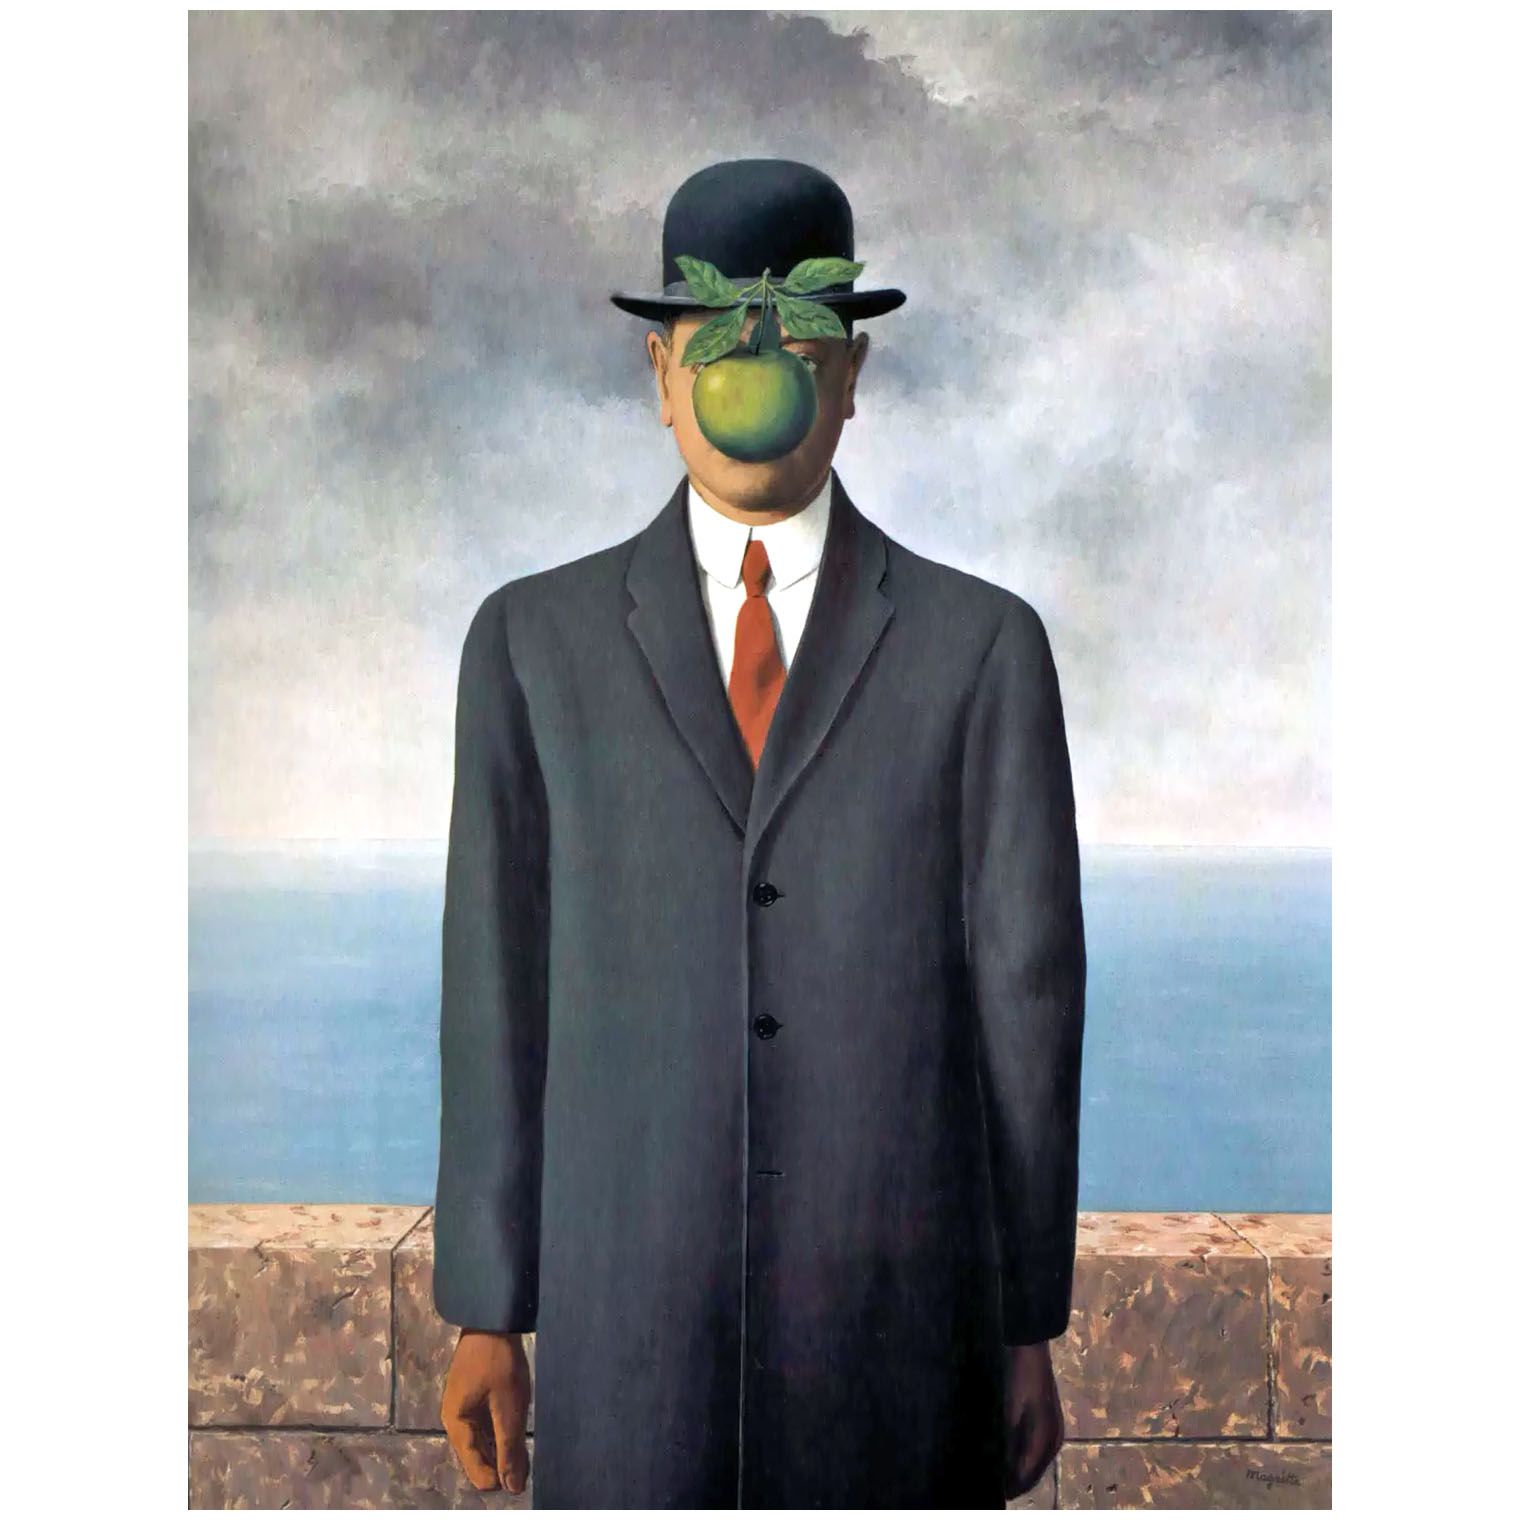 Rene Magritte. Le fils de l’homme. 1946. Private collection